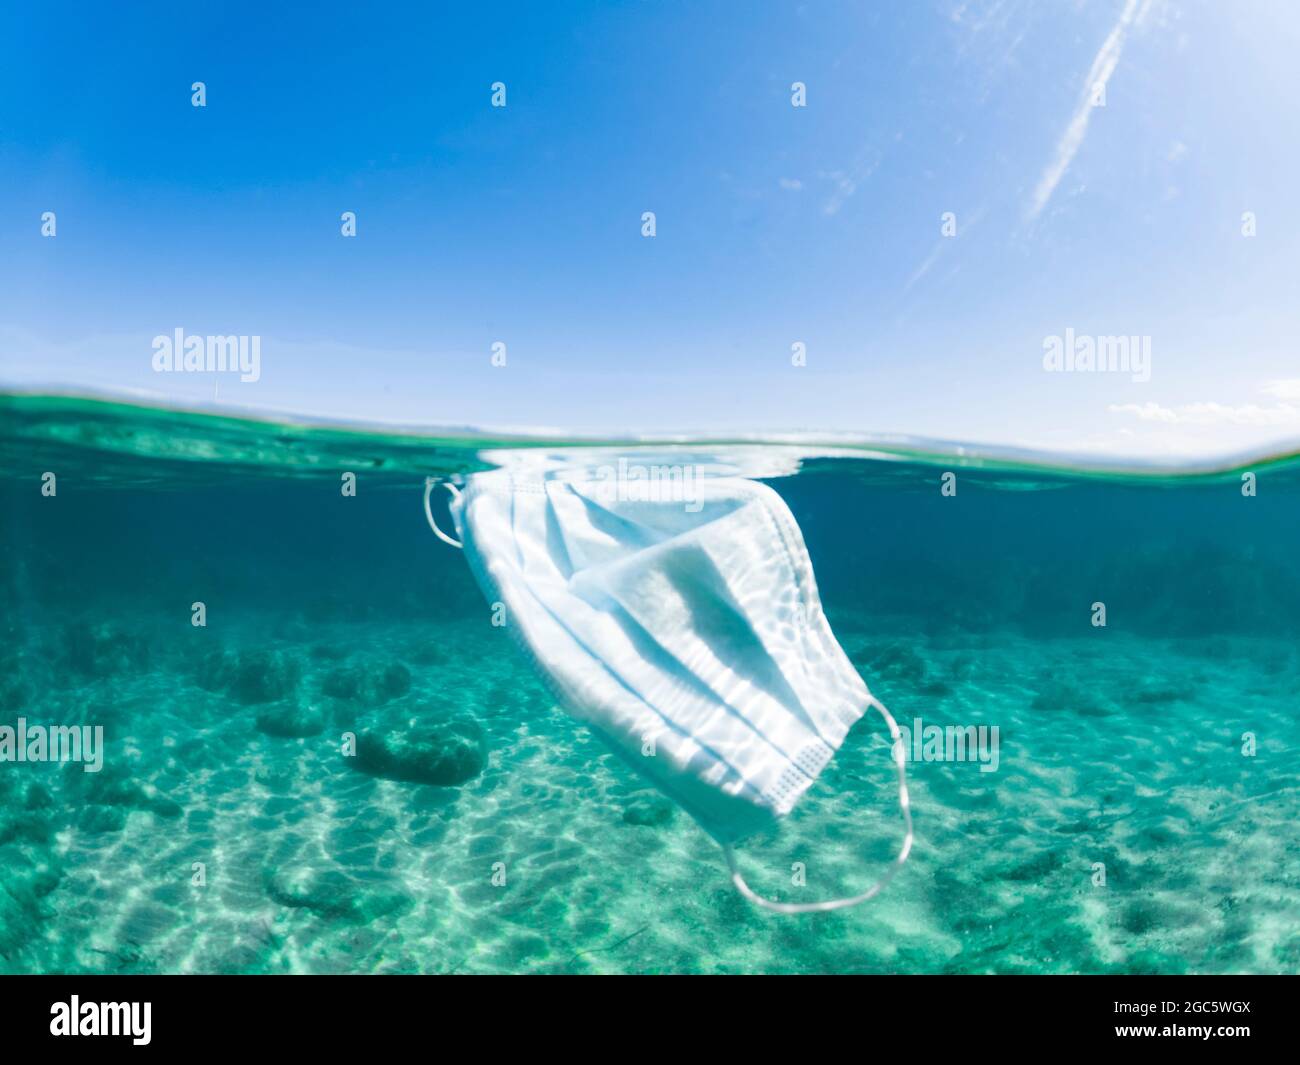 Un masque chirurgical à jet partagé, défoqué, flottant dans une eau turquoise. Concept de pollution de la mer pendant la pandémie de Covid-19. Sardaigne, Italie. Banque D'Images